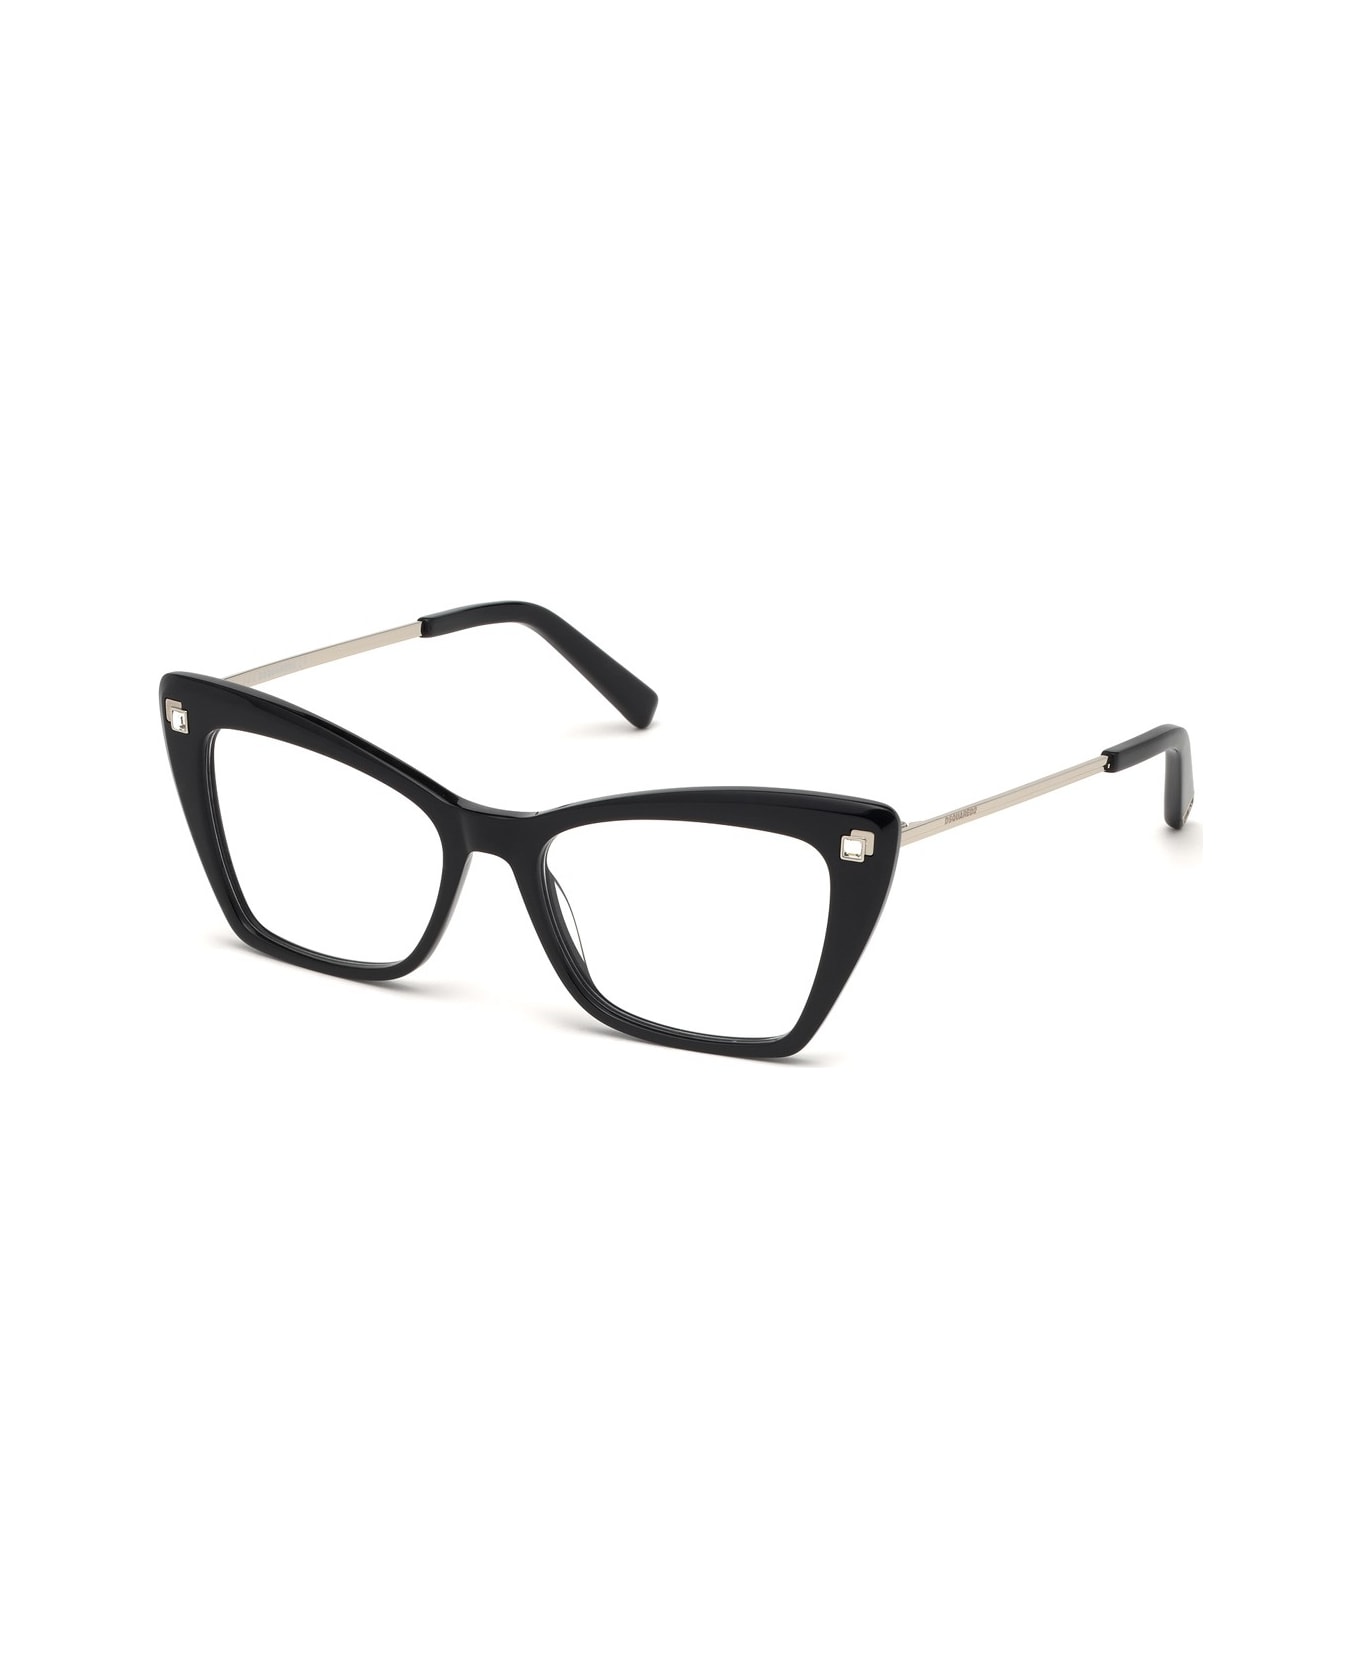 Dsquared2 Eyewear Dq5288 Glasses - Nero アイウェア